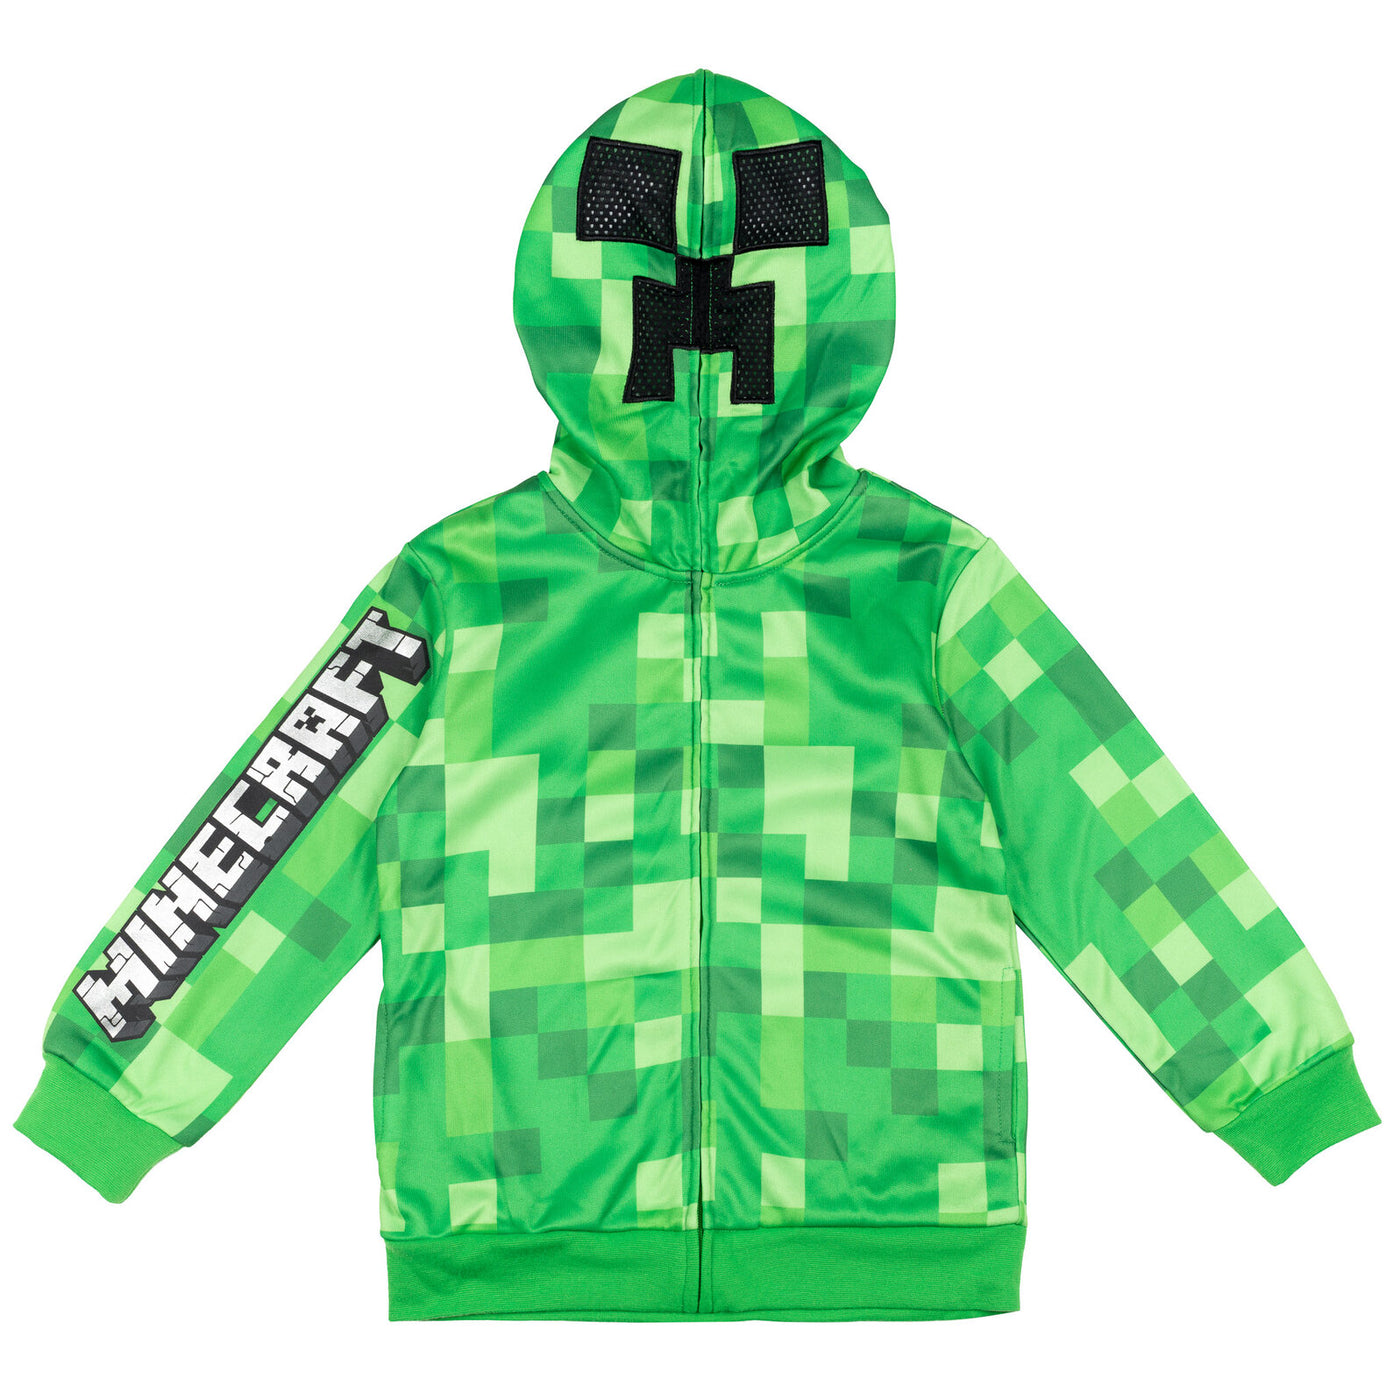 Minecraft Creeper Fleece Zip Up Hoodie